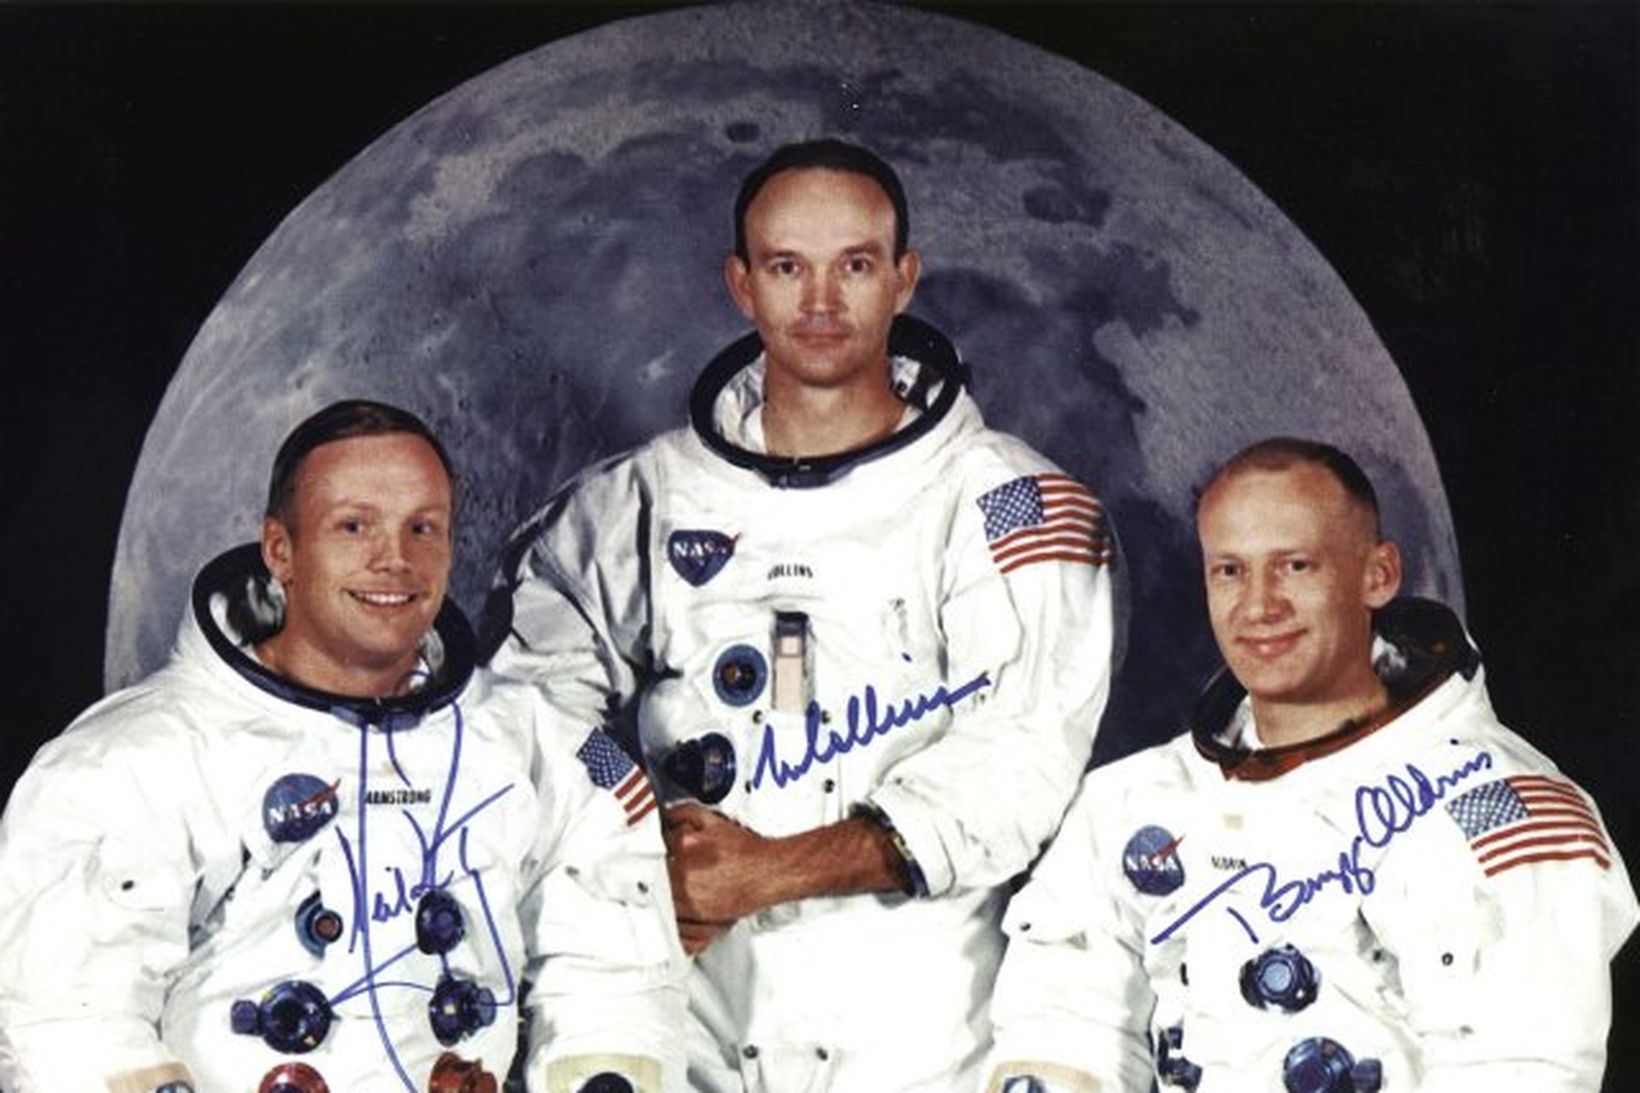 Áhöfnin í Apollo 11 sem lenti á tunglinu árið 1969.